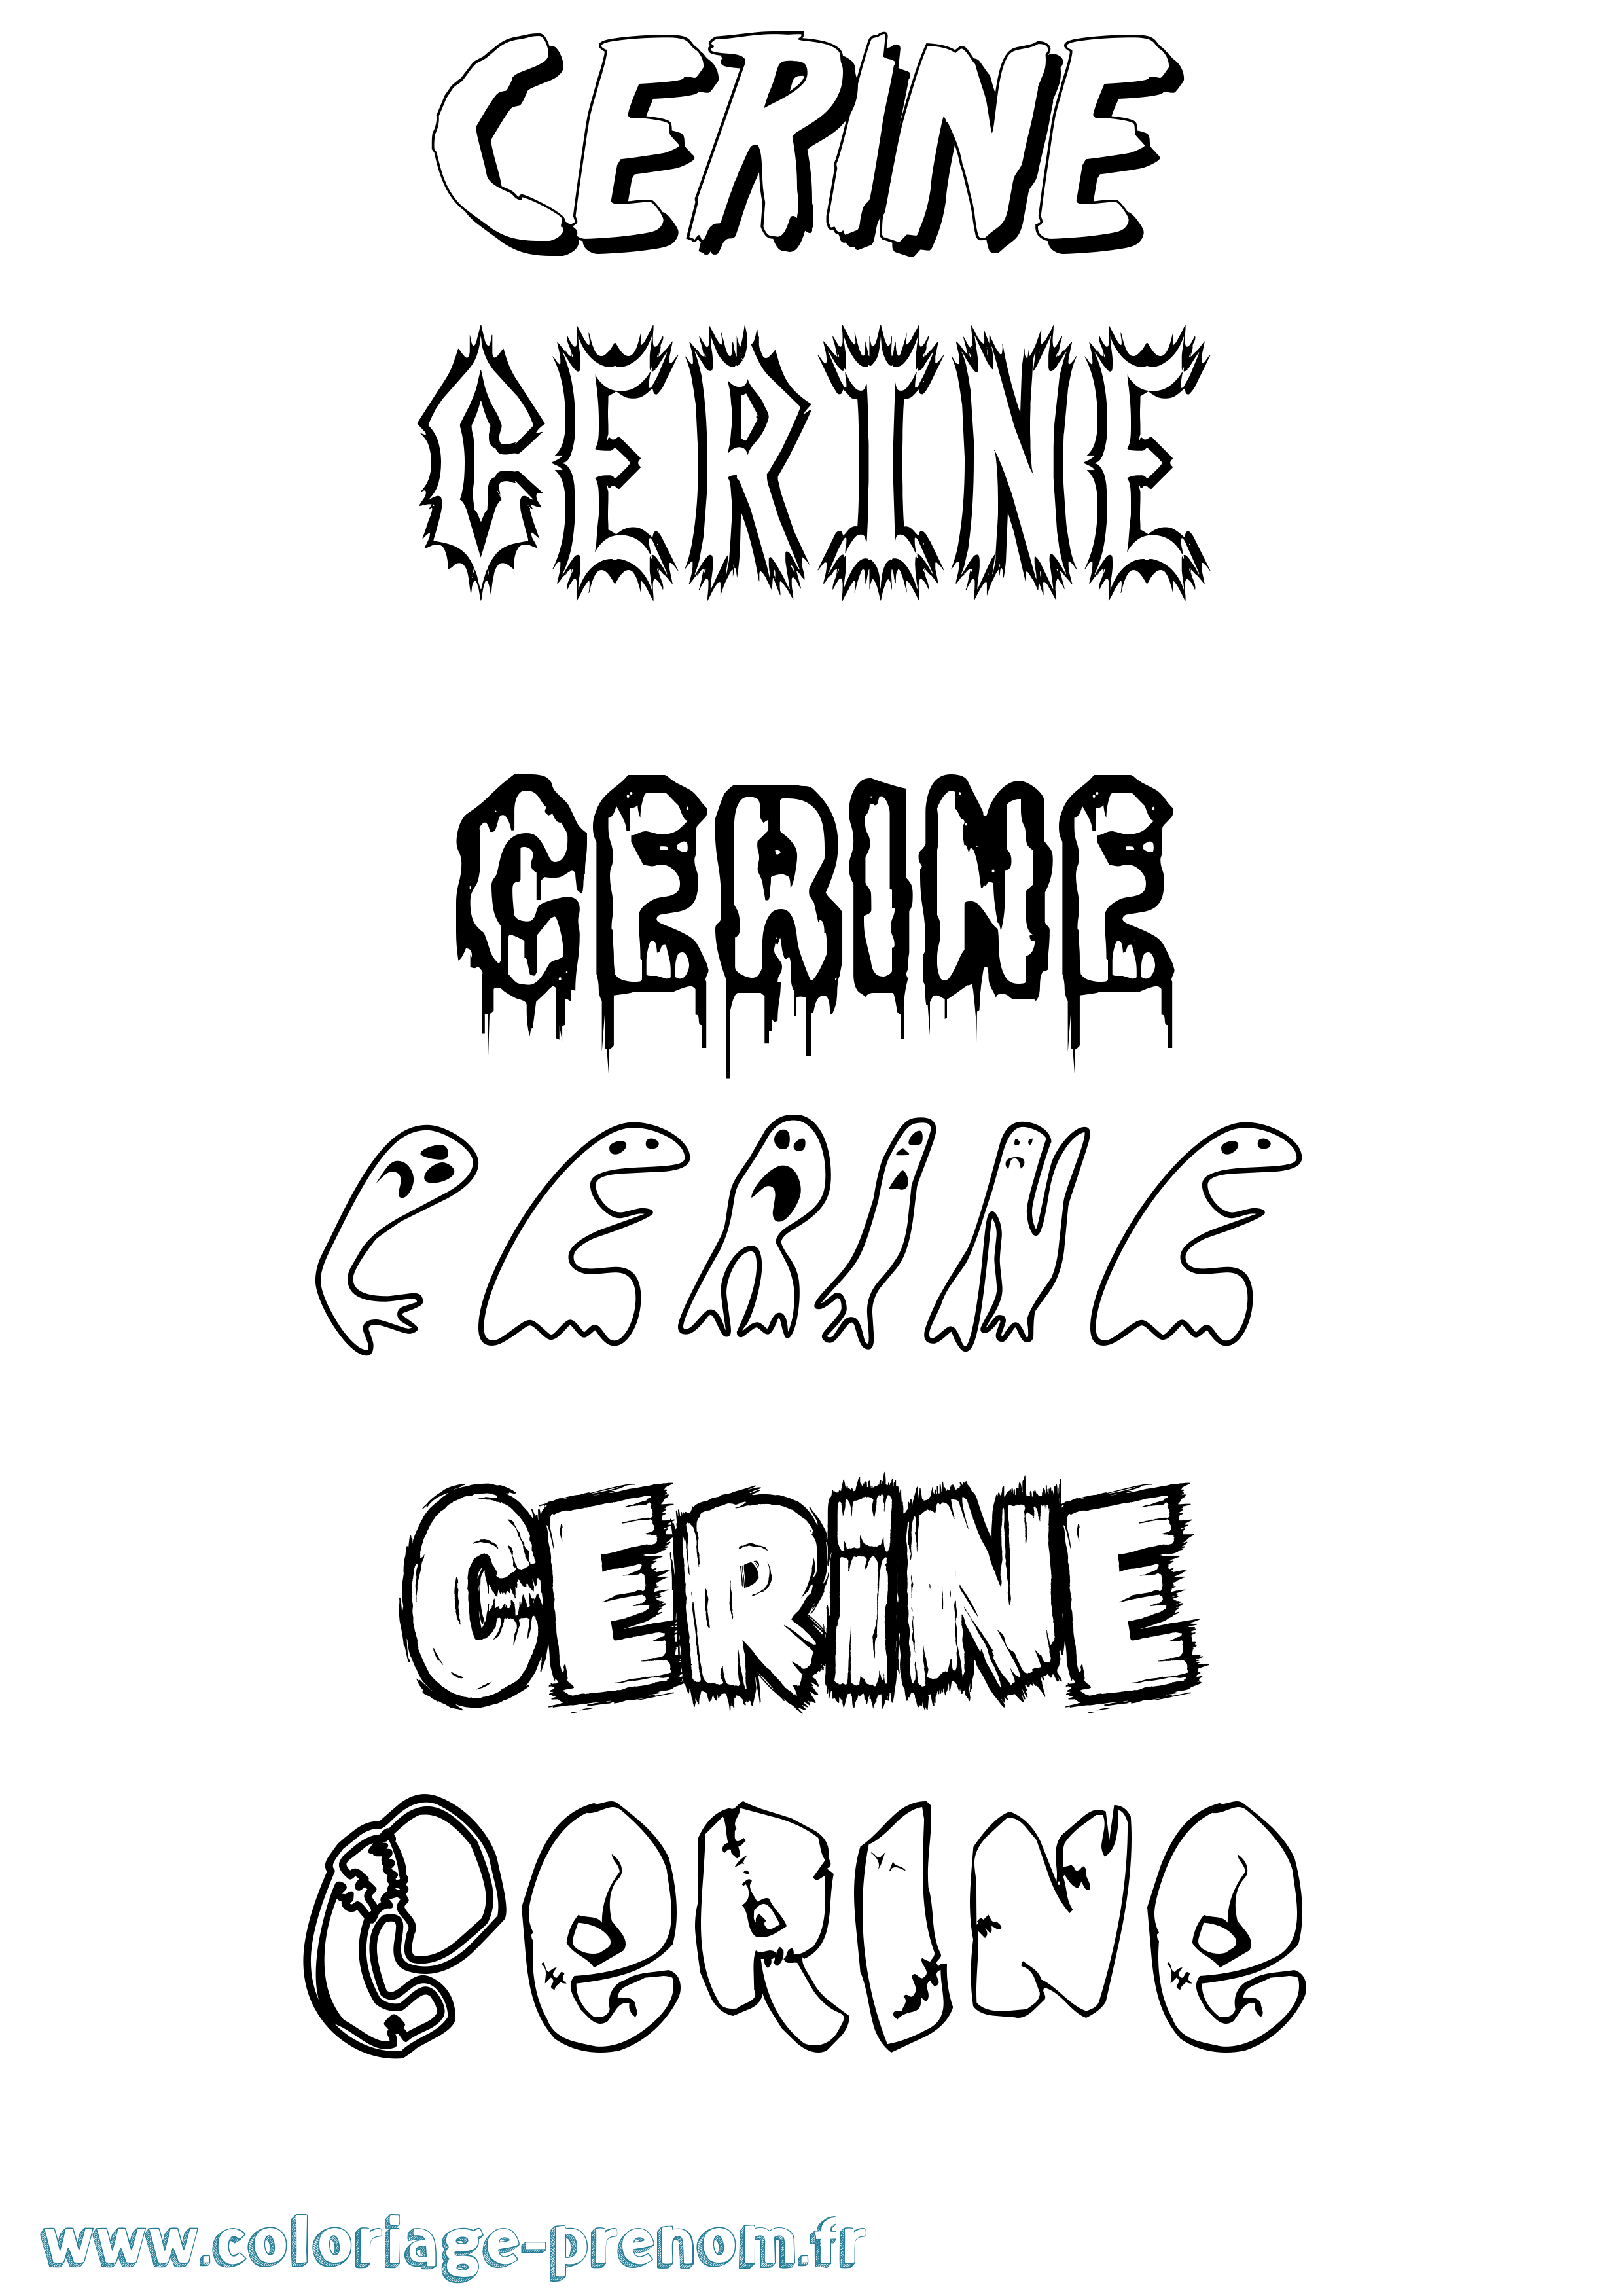 Coloriage prénom Cerine Frisson